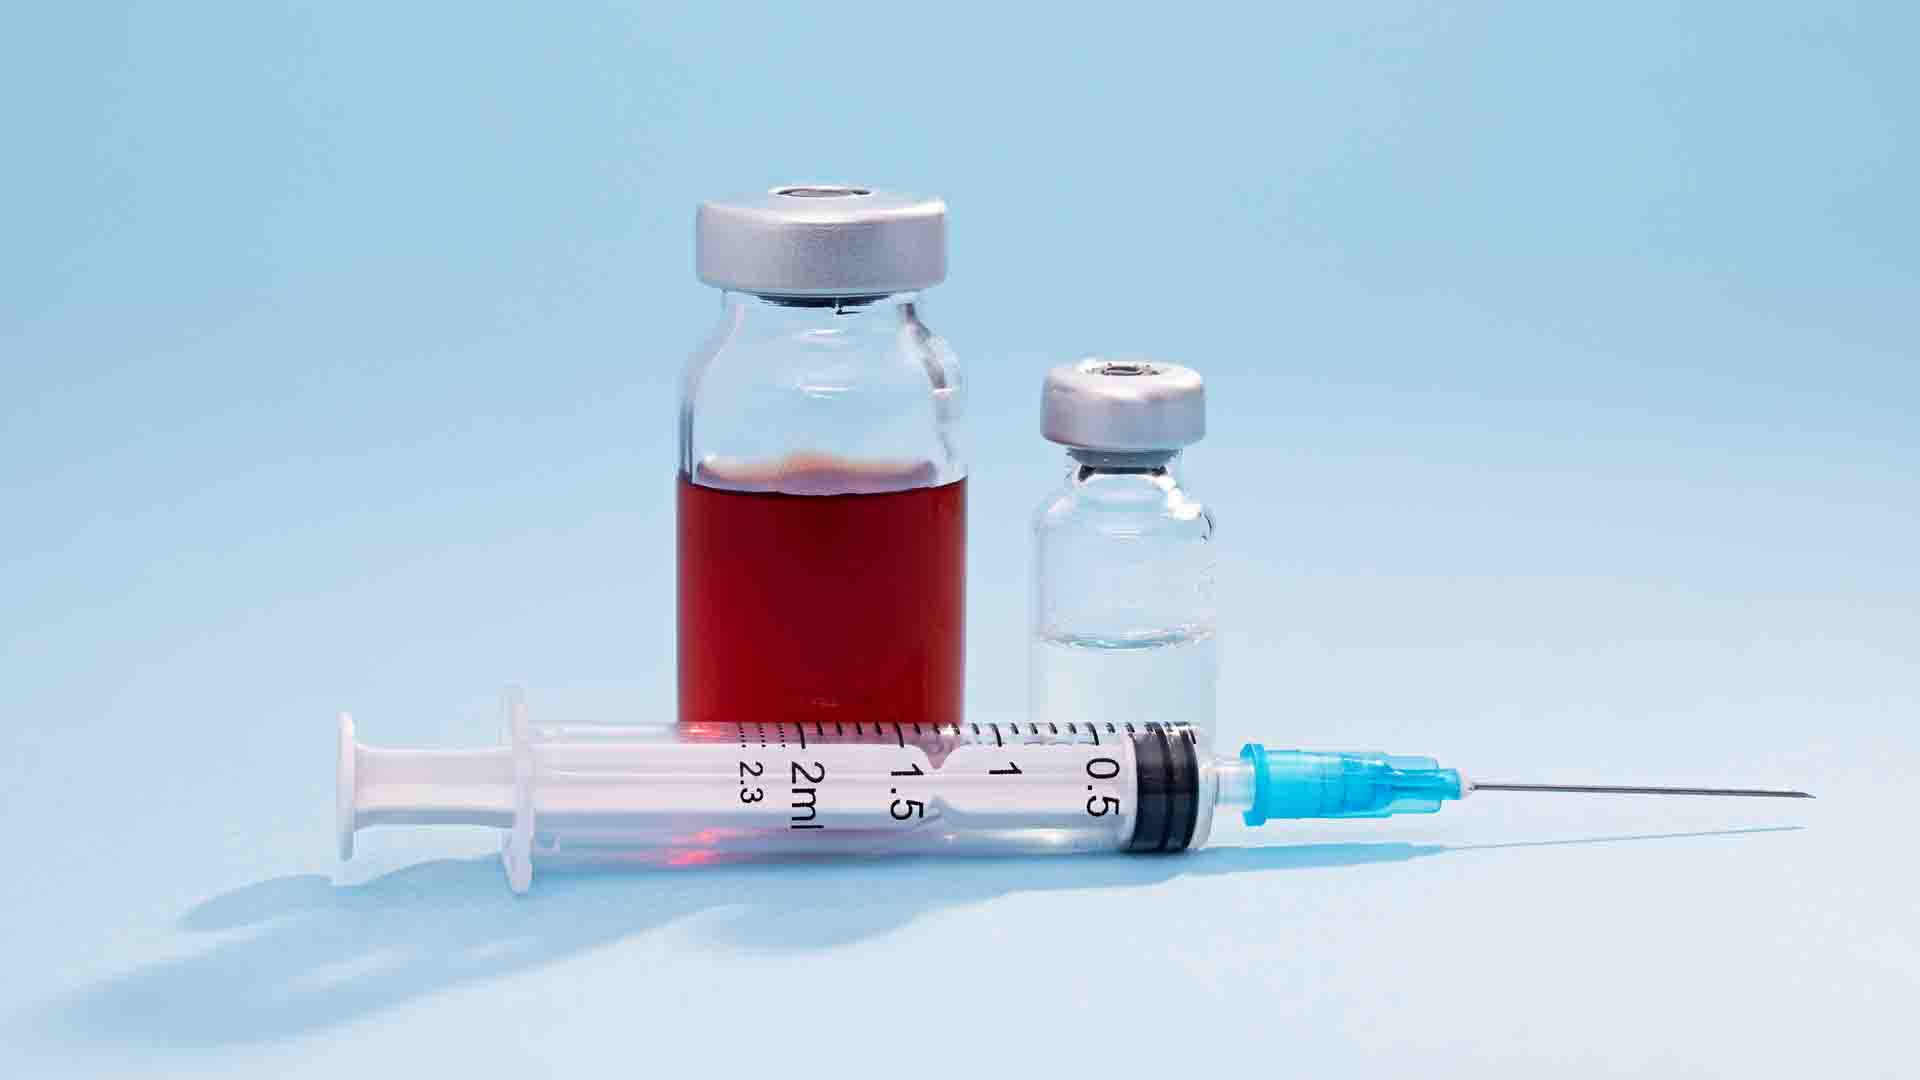 Comment se transmettent les hépatites B et C ? par injection